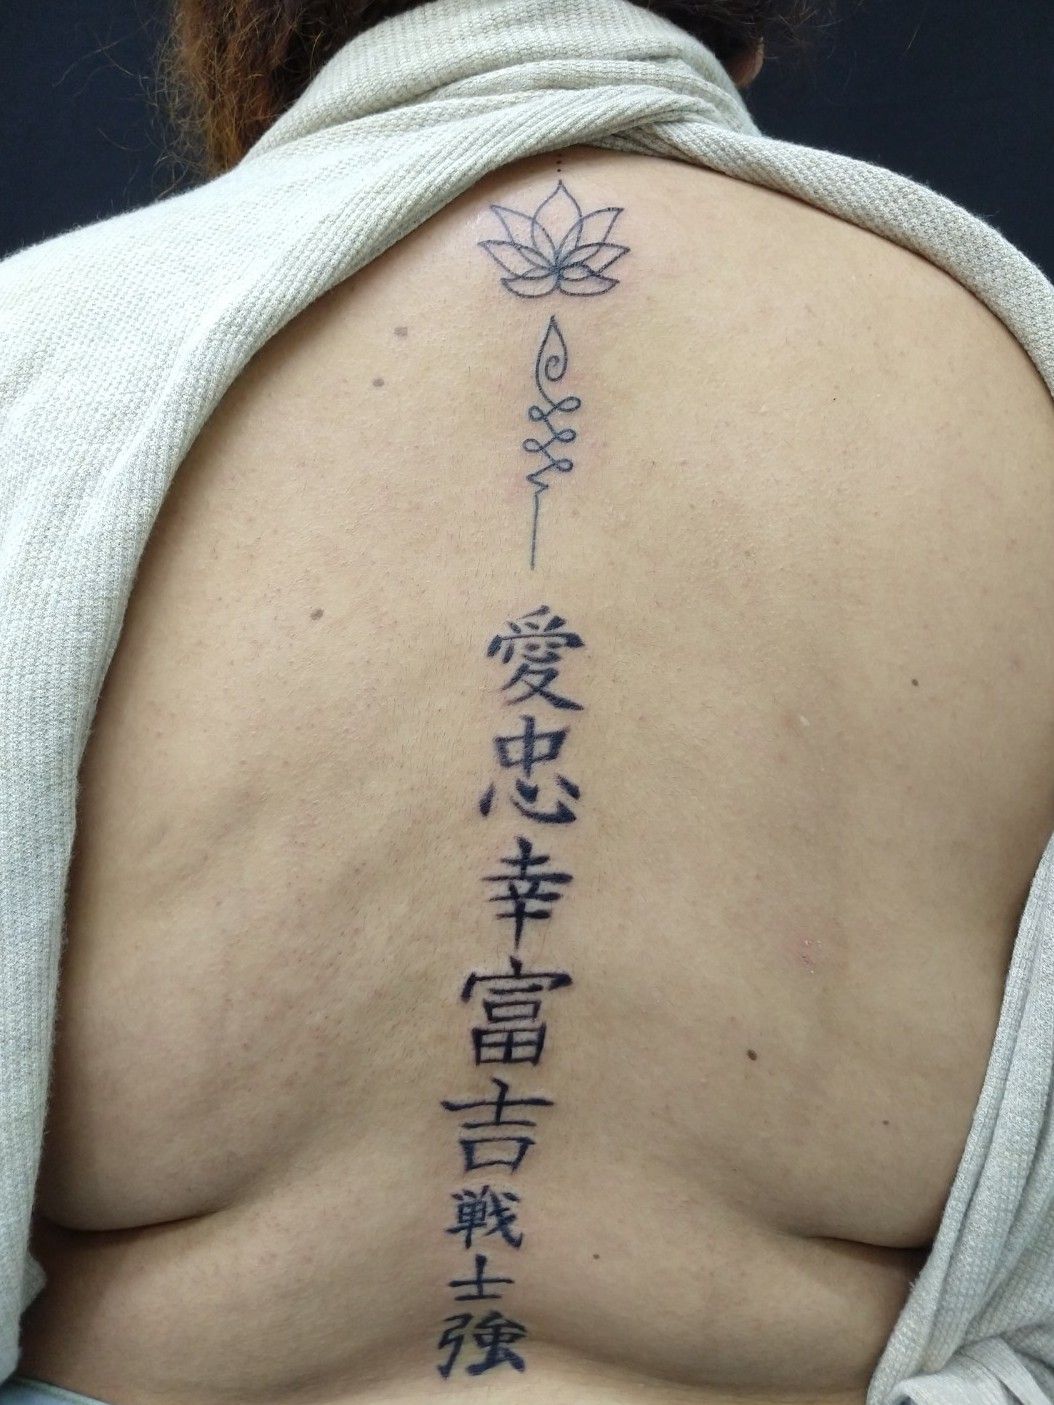 Tattoo uploaded by Ivan Romero • Lotus flower/ Kanji Tattoo • Tattoodo